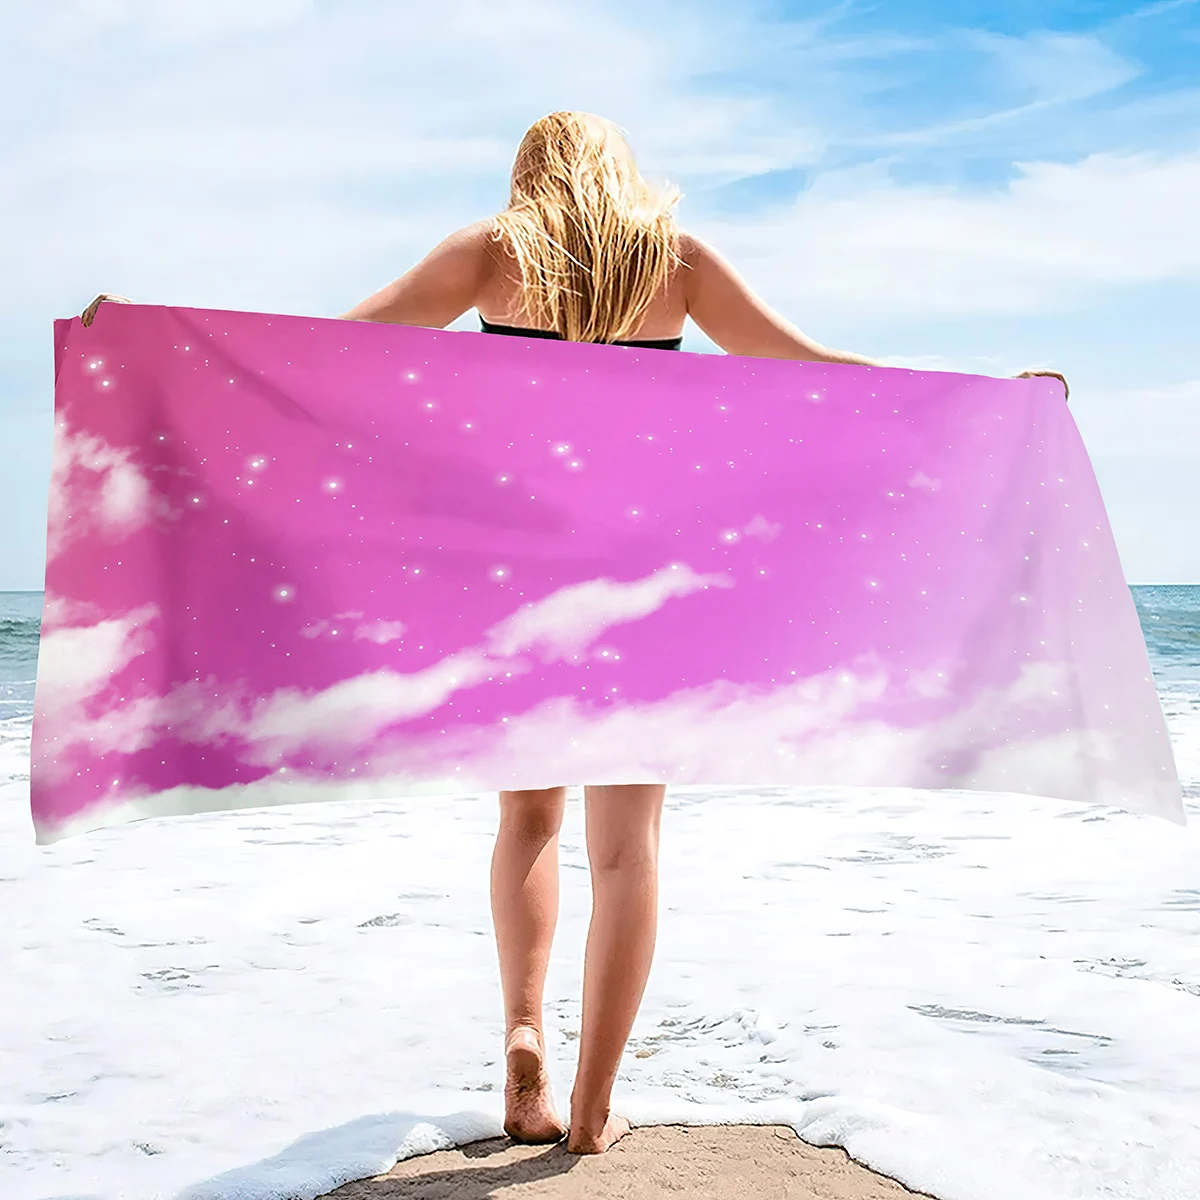 

Пляжное полотенце, дорожное пляжное полотенце большого размера, s одеяло, без песка, быстросохнущее абсорбирующее полотенце для бассейна, Пляжное банное полотенце в гавайском стиле, Розовое Небо